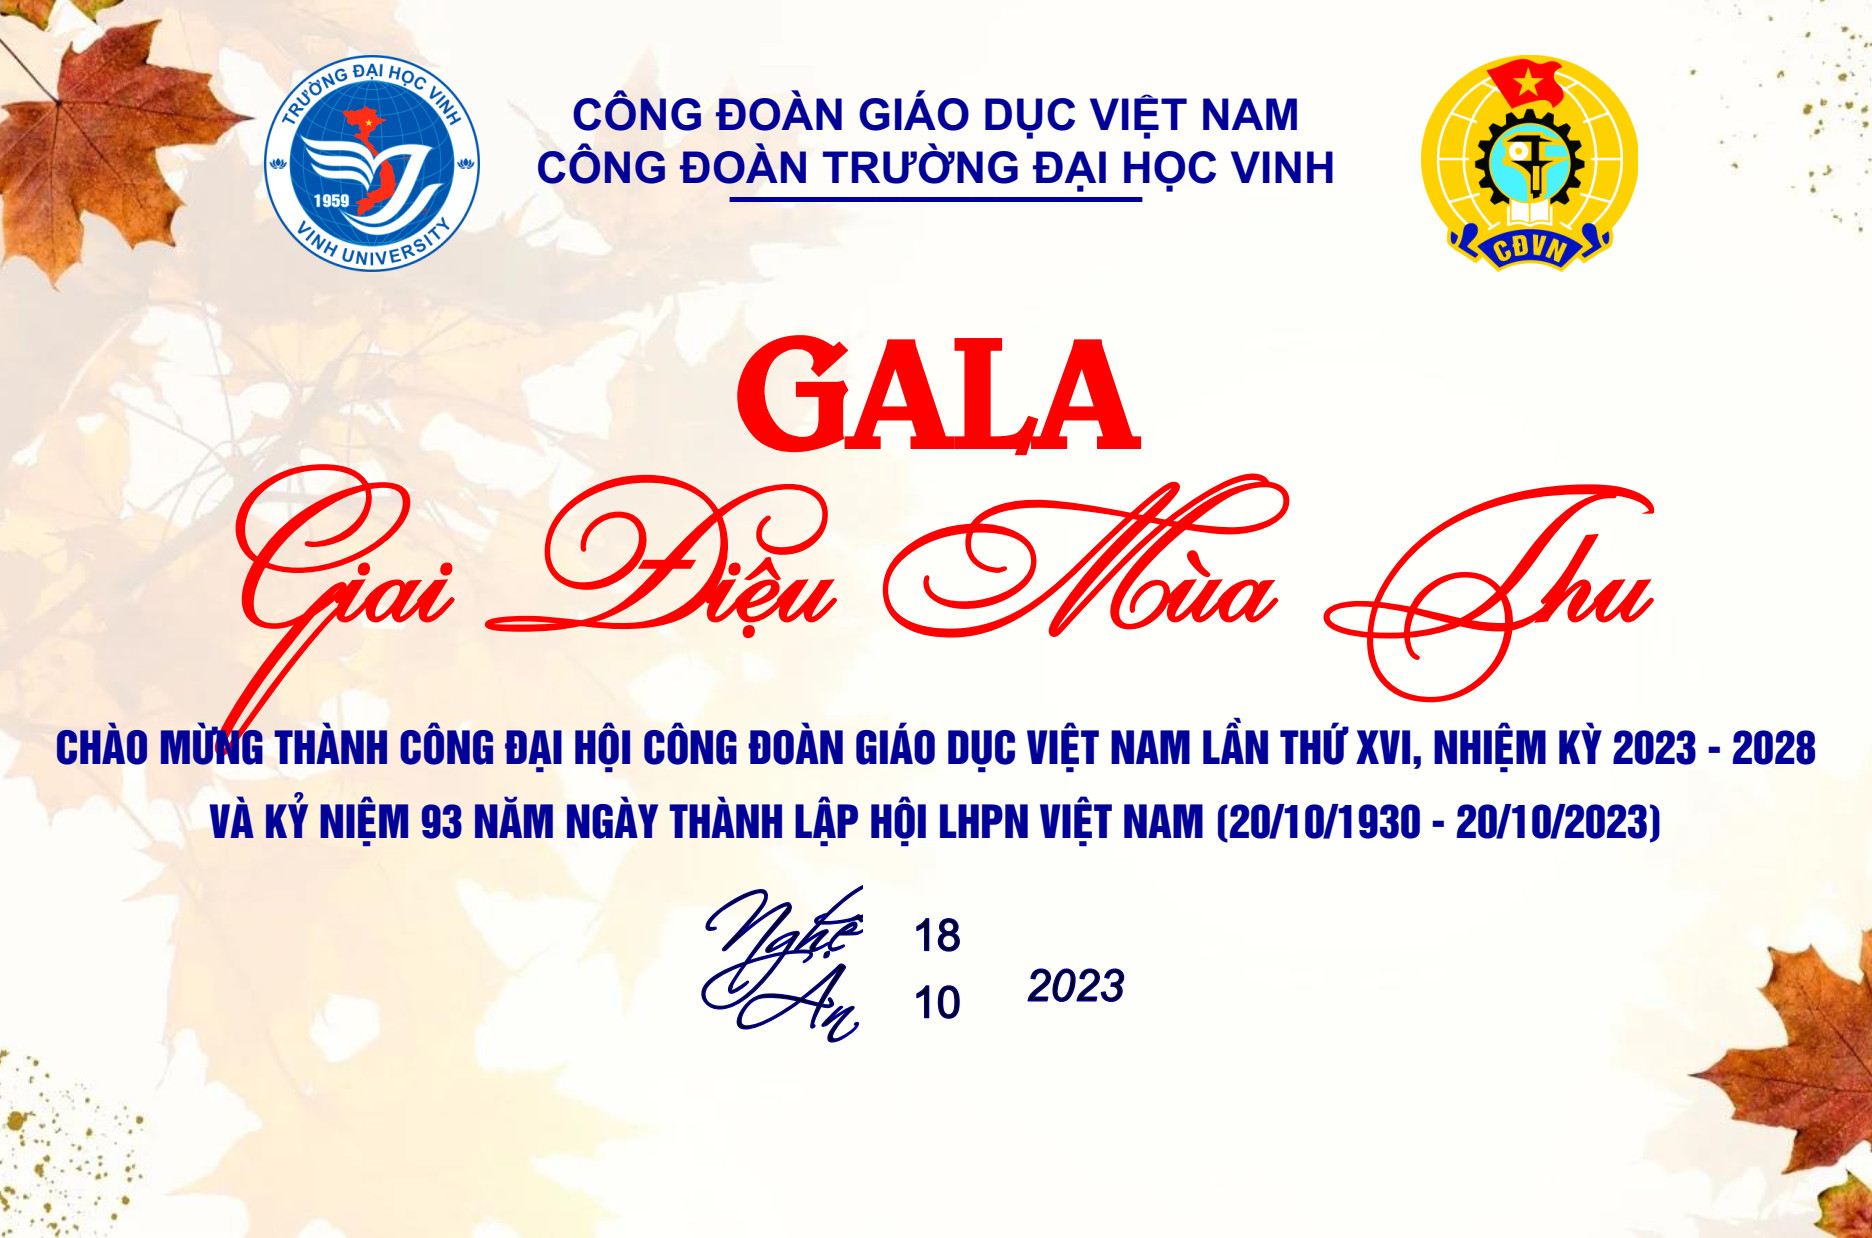 Kế hoạch tổ chức Gala "Giai điệu mùa thu"